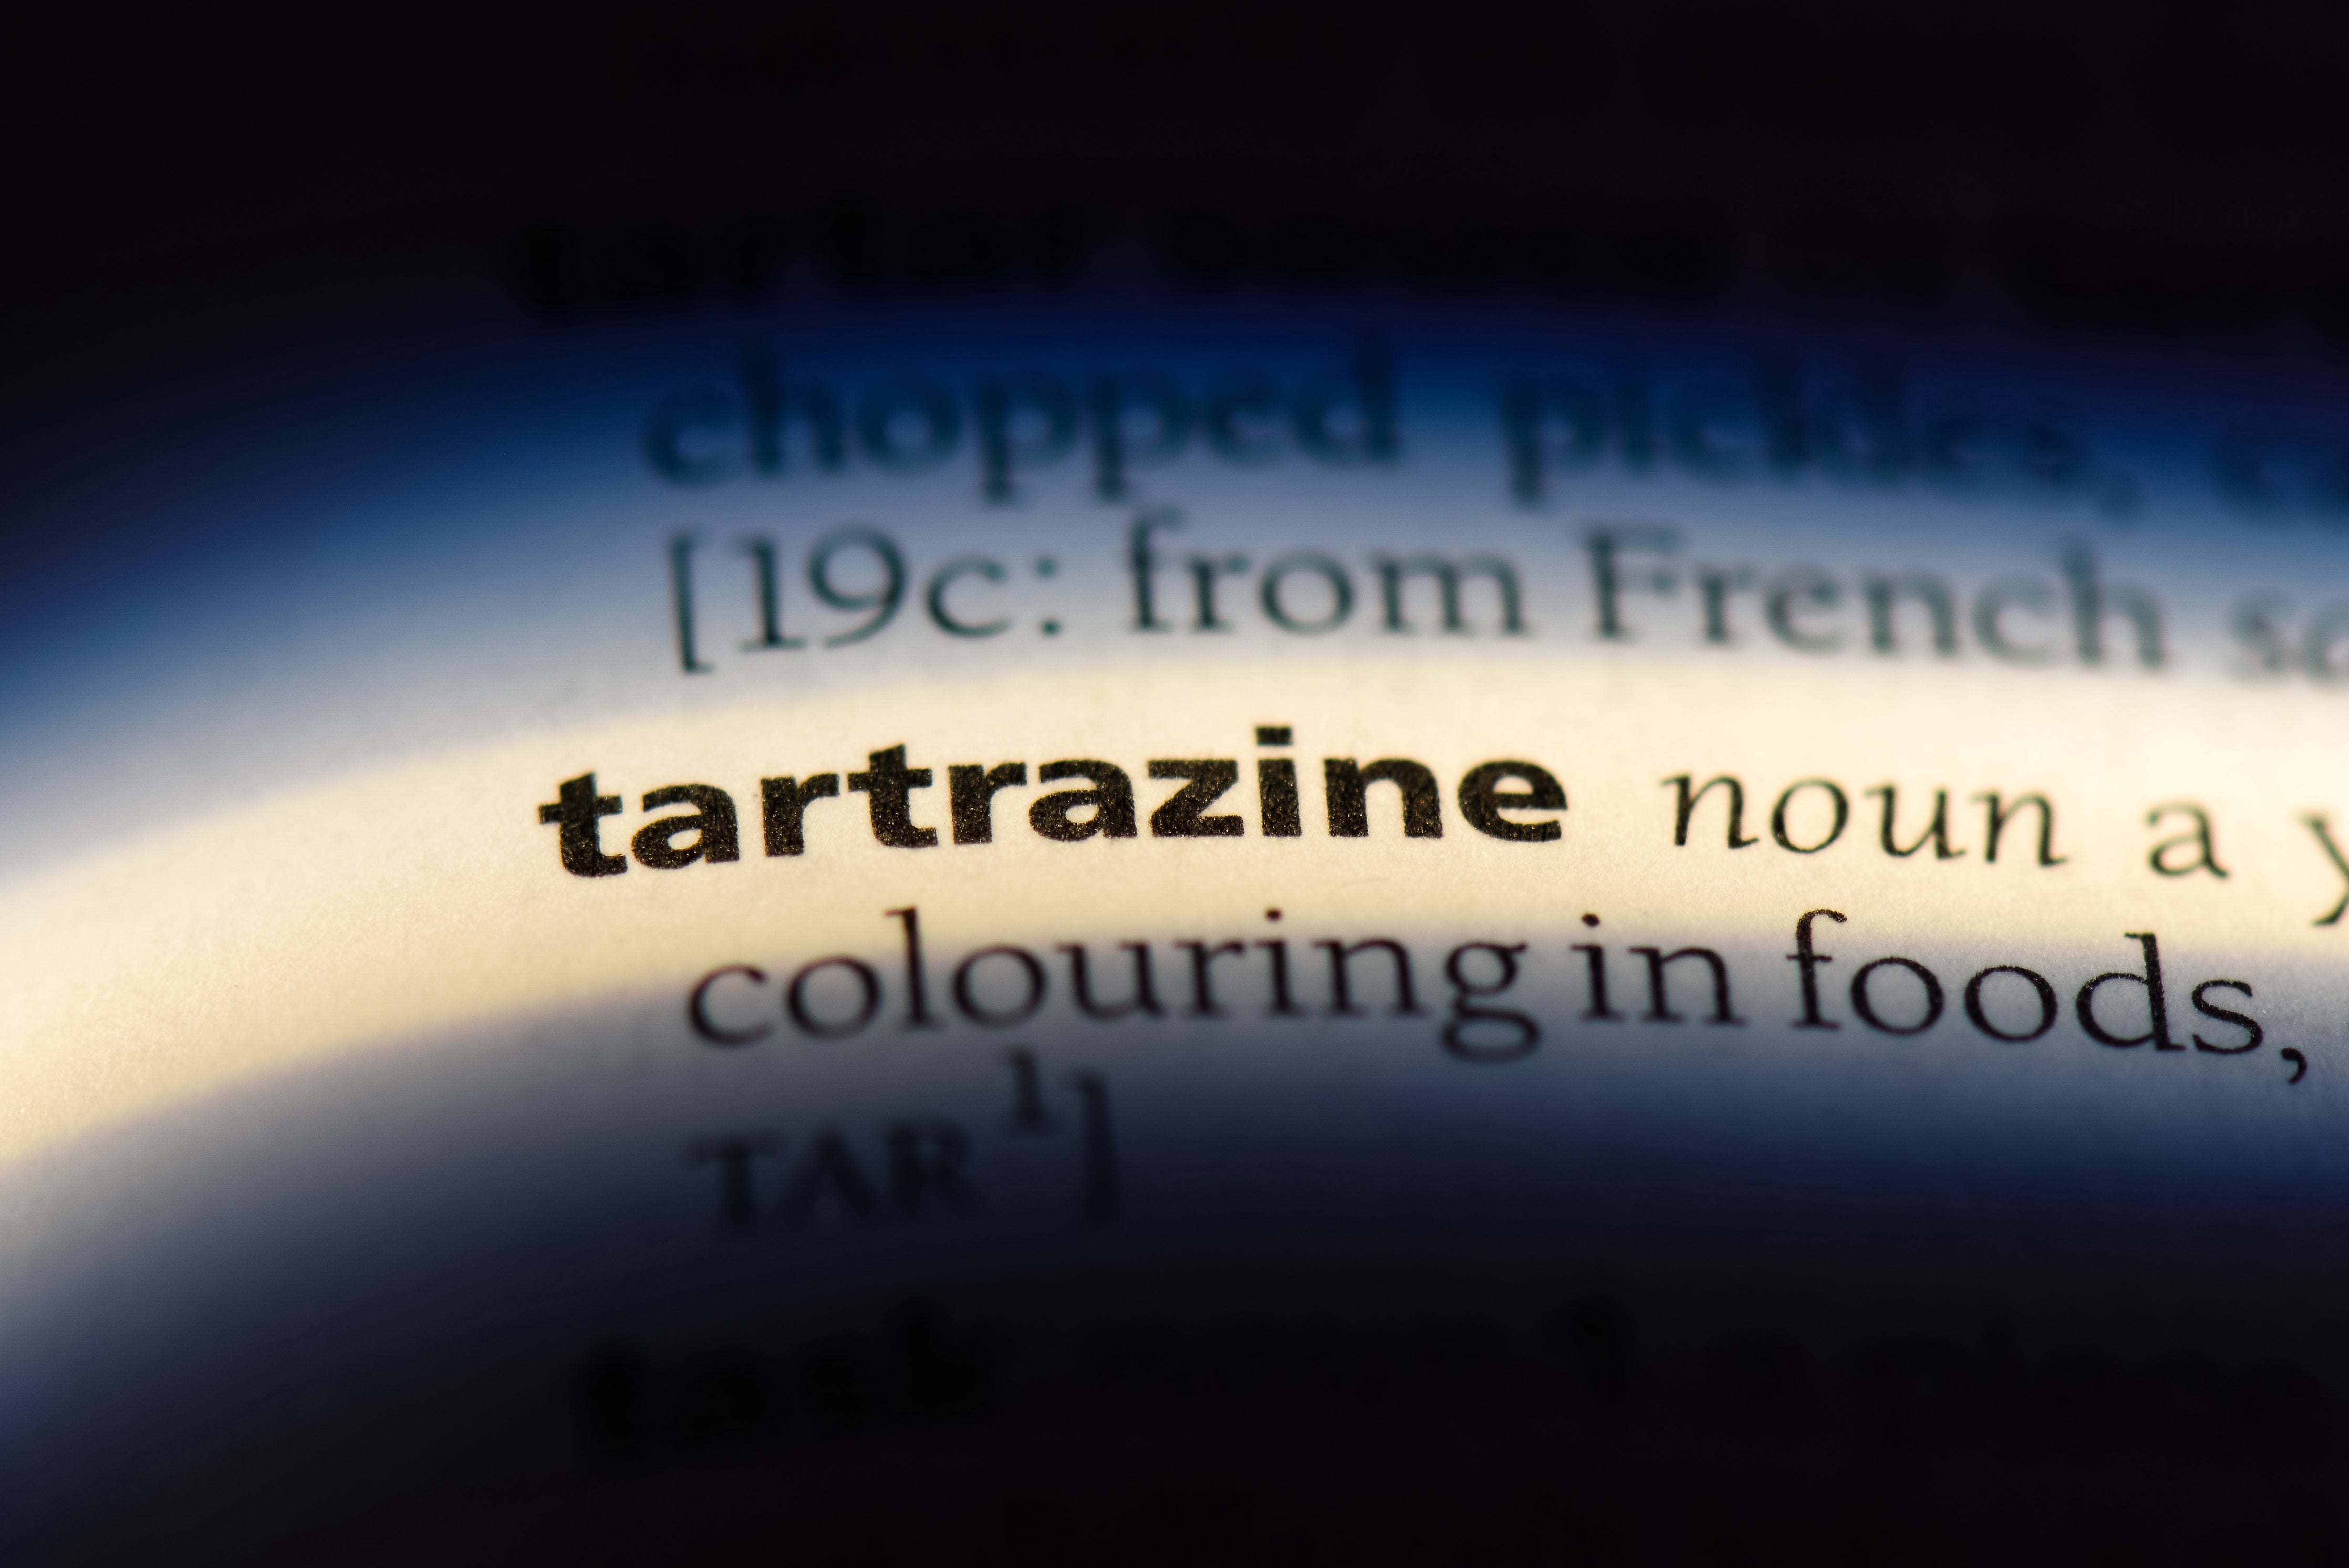 tatrazine